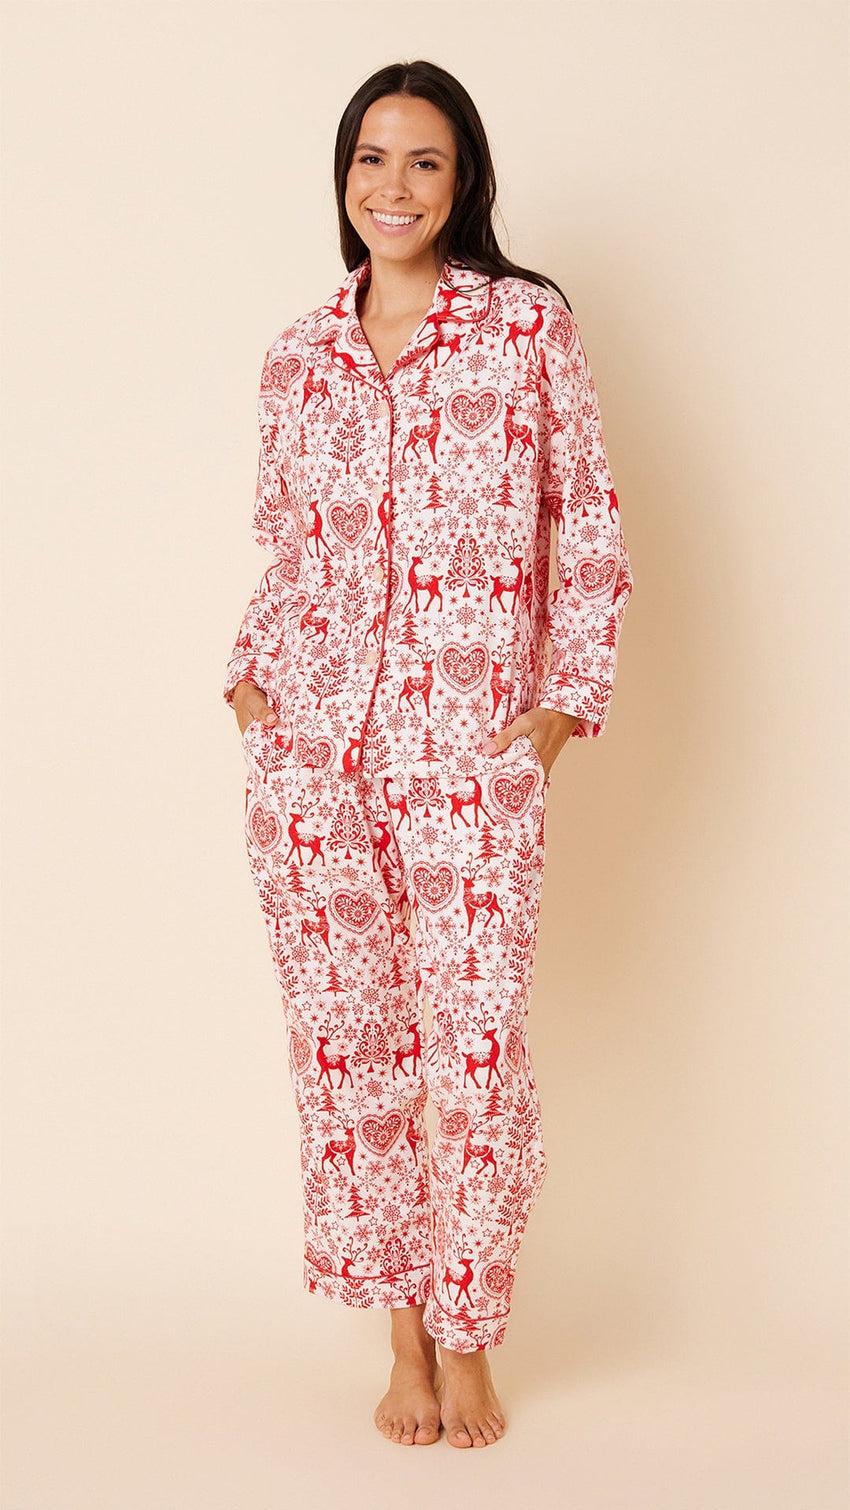 Holly Jolly Flannel Pajama – The Cat's Pajamas